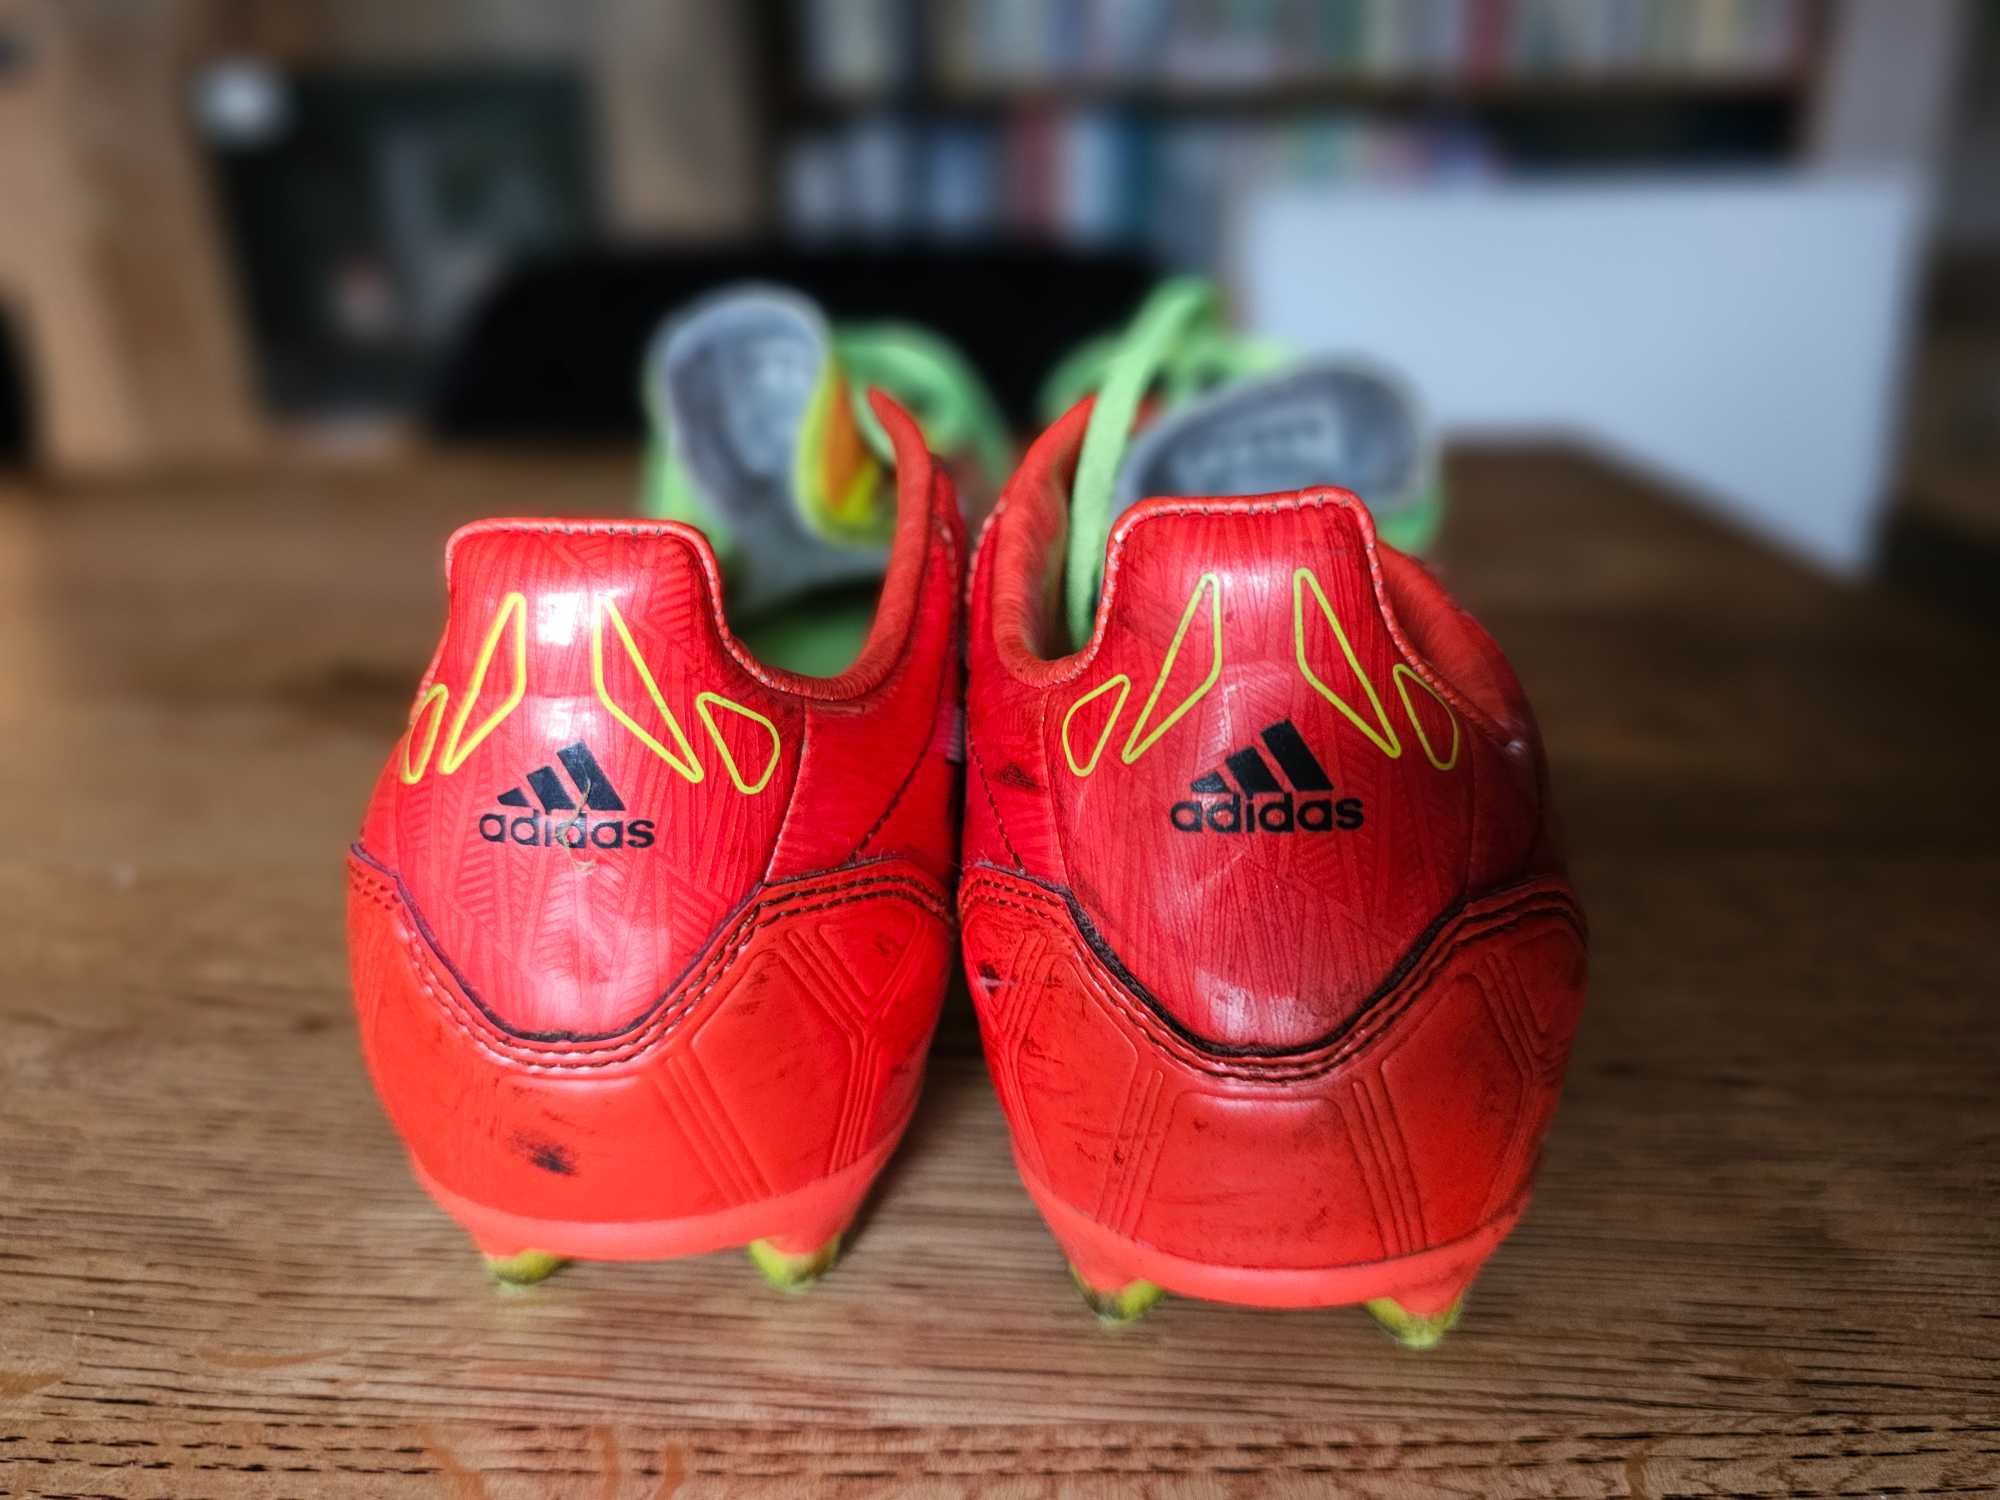 Adidas buty korki do gry w piłkę nożną 38 wkładka 23cm